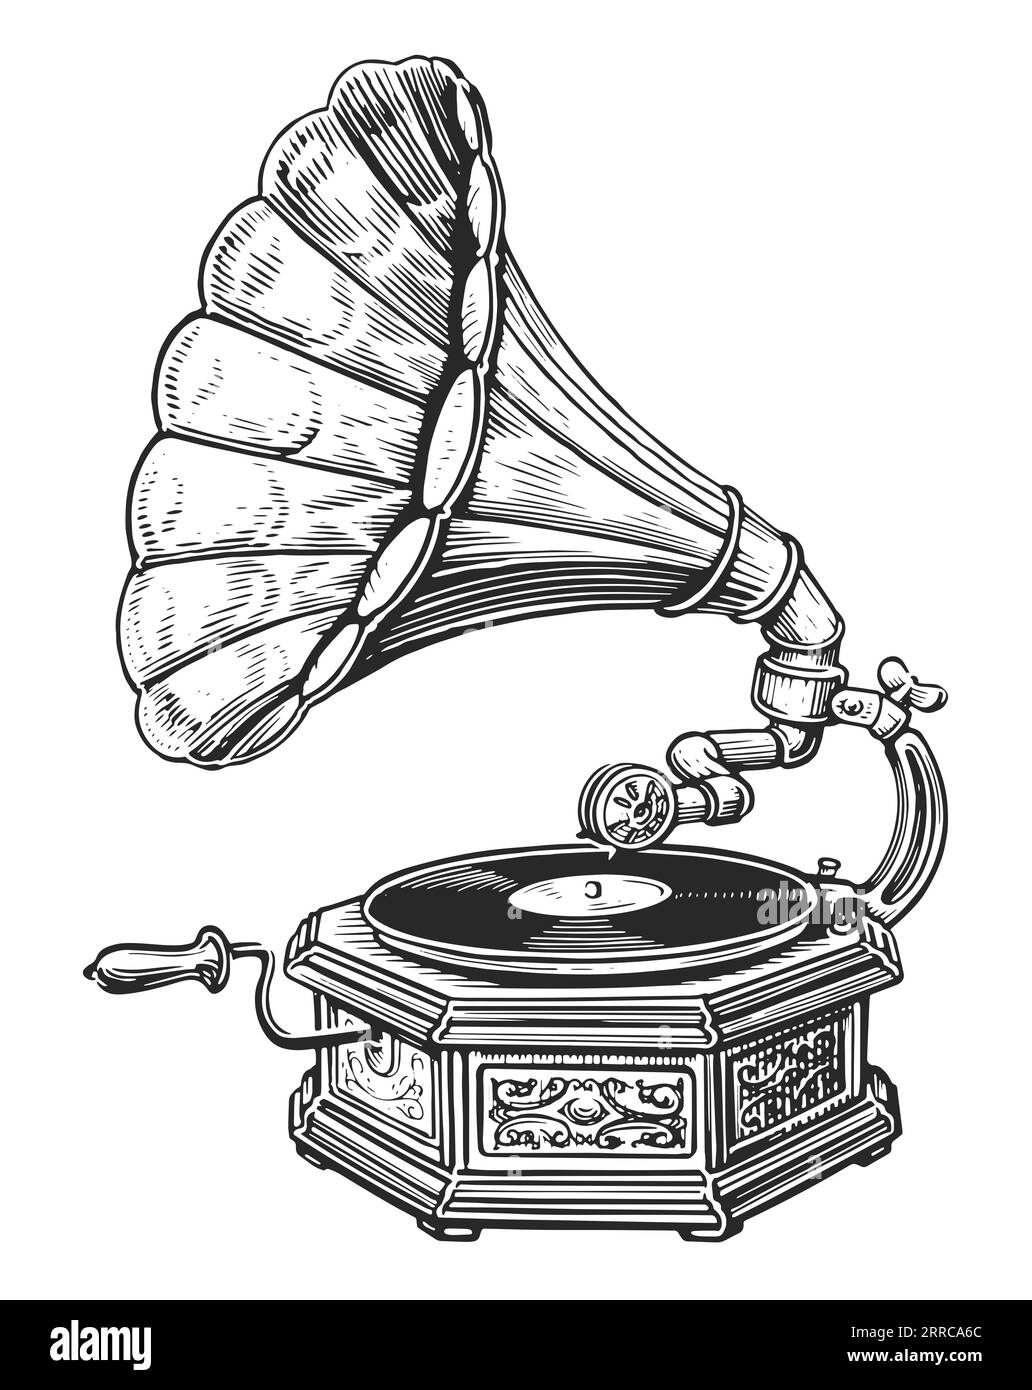 Lecteur de gramophone vintage avec dessin de disque vinyle dessin à la main. Appareil de musique rétro avec haut-parleur à pavillon Banque D'Images